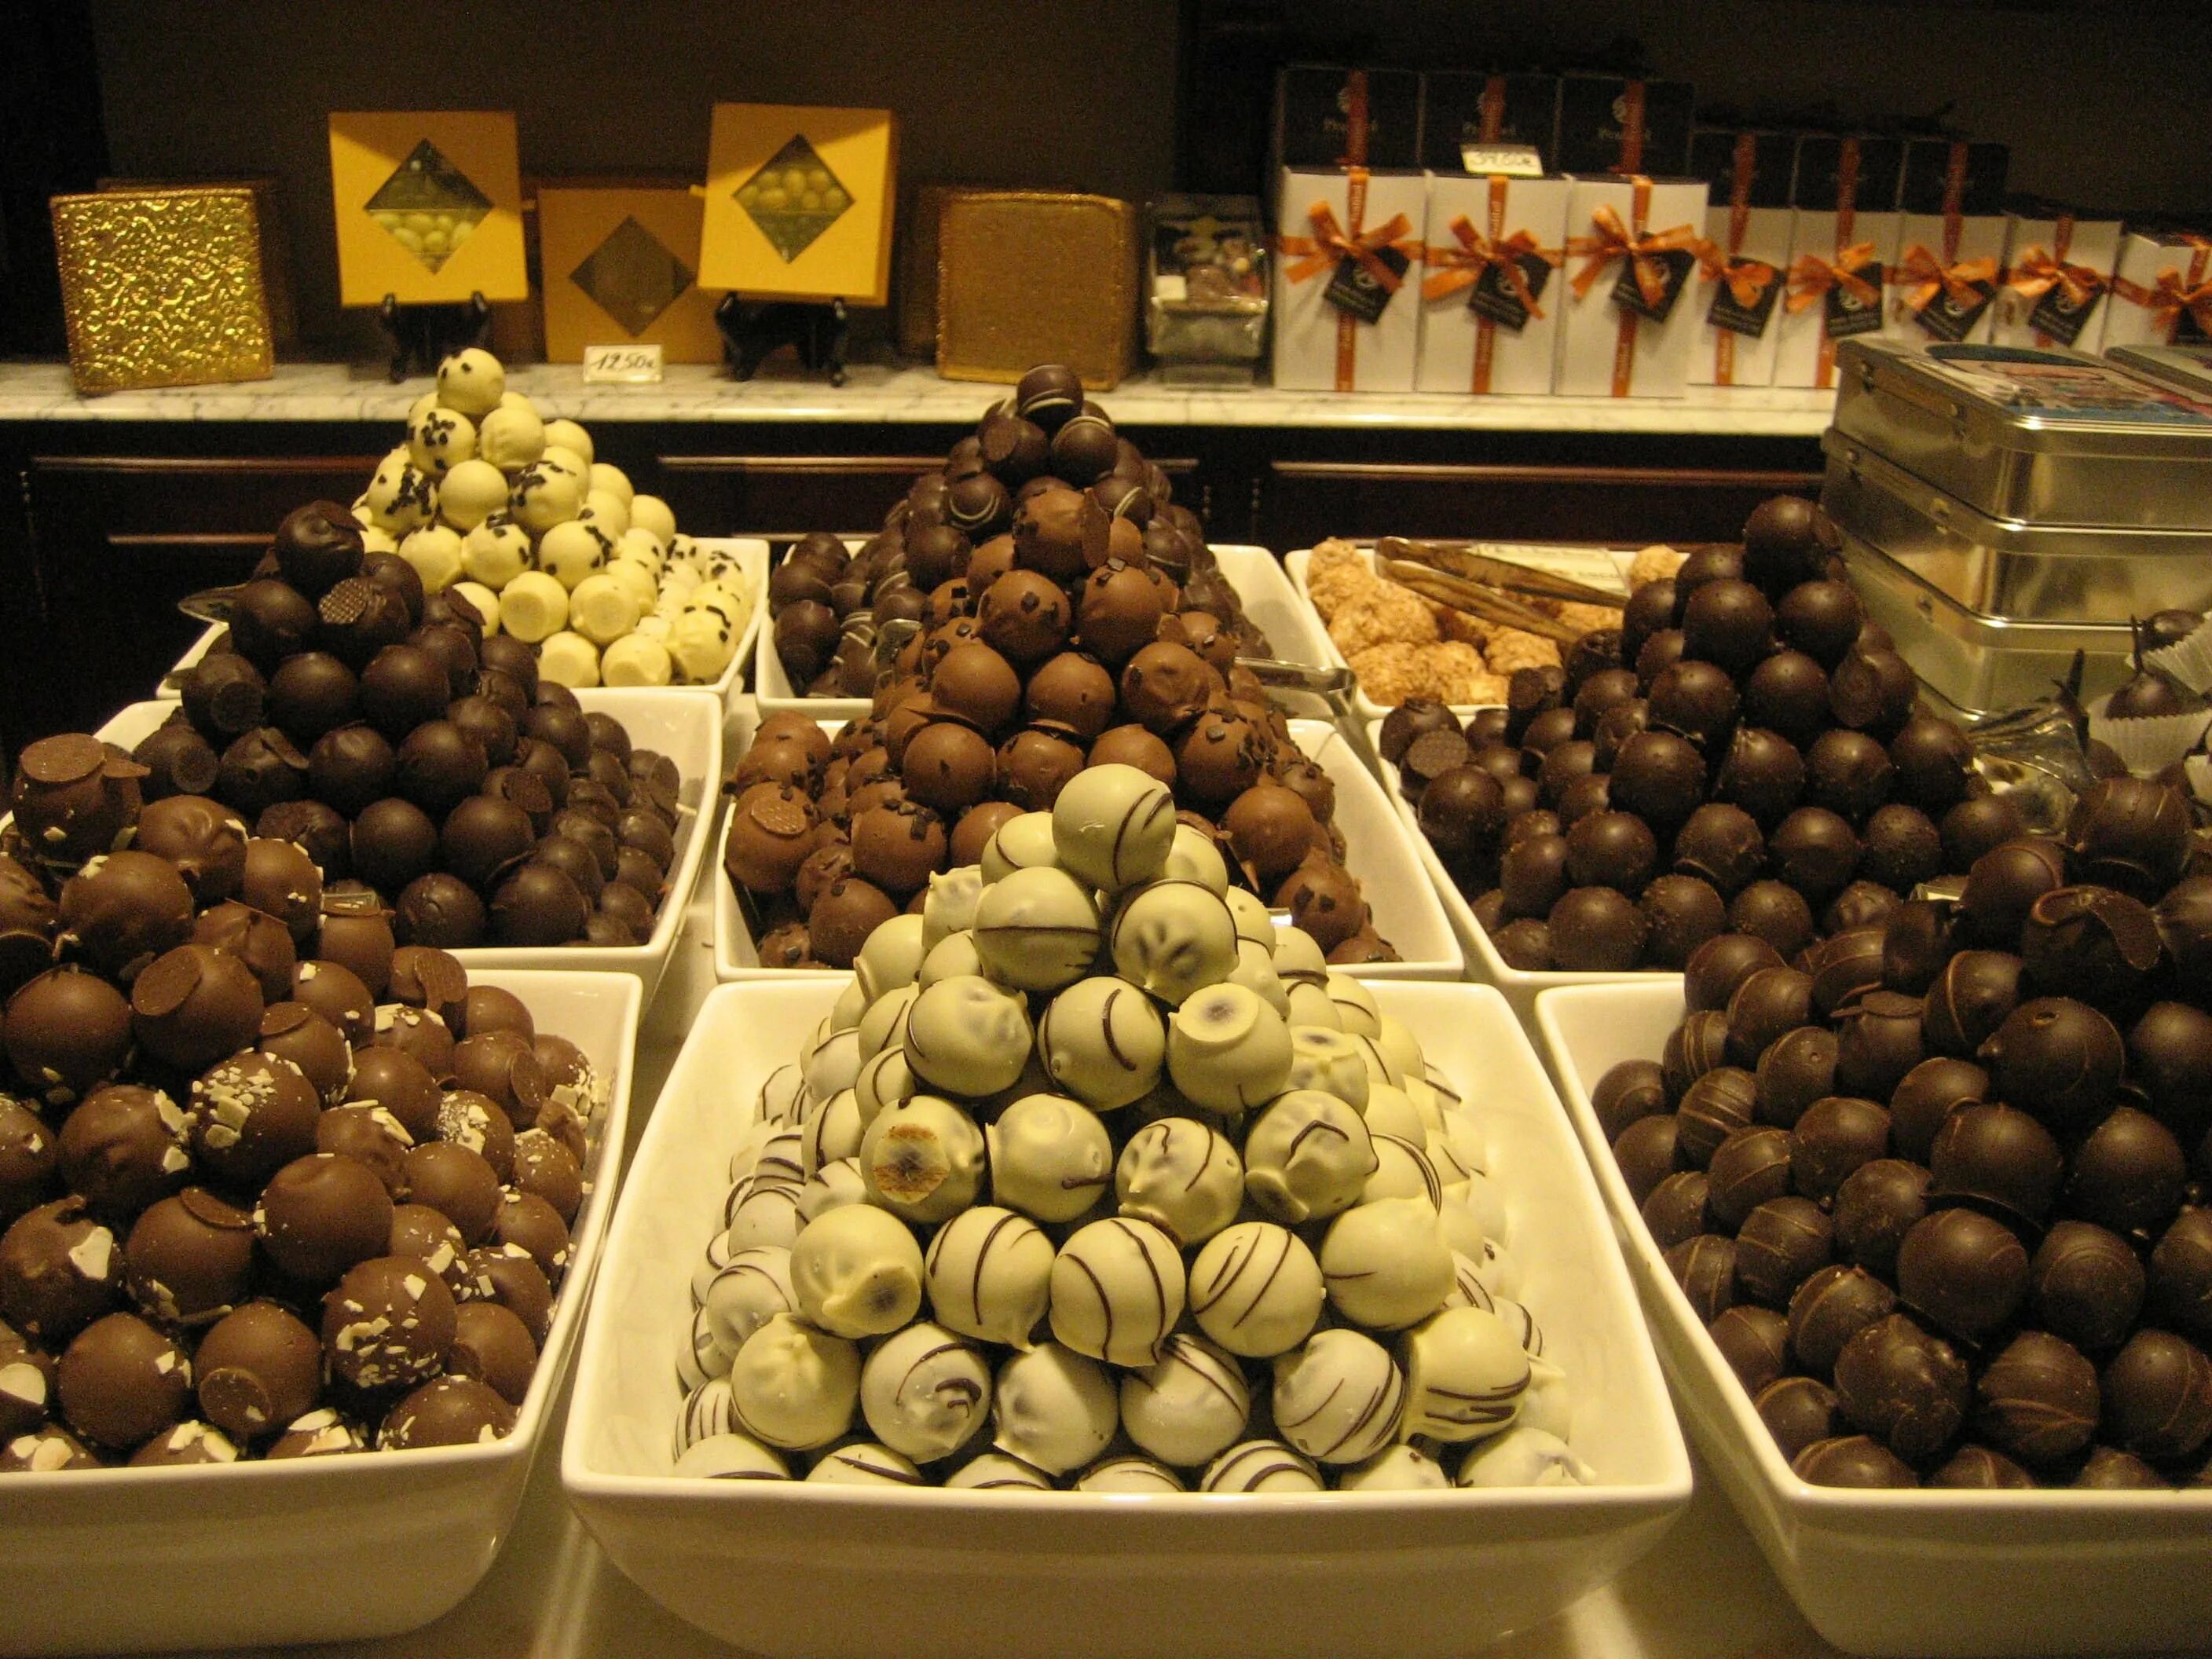 Бельгийский шоколад купить. Шоколад Бельгиан. Бельгия шоколад. Шоколадный бутик бельгийский шоколад. Бельгийские шоколатье.